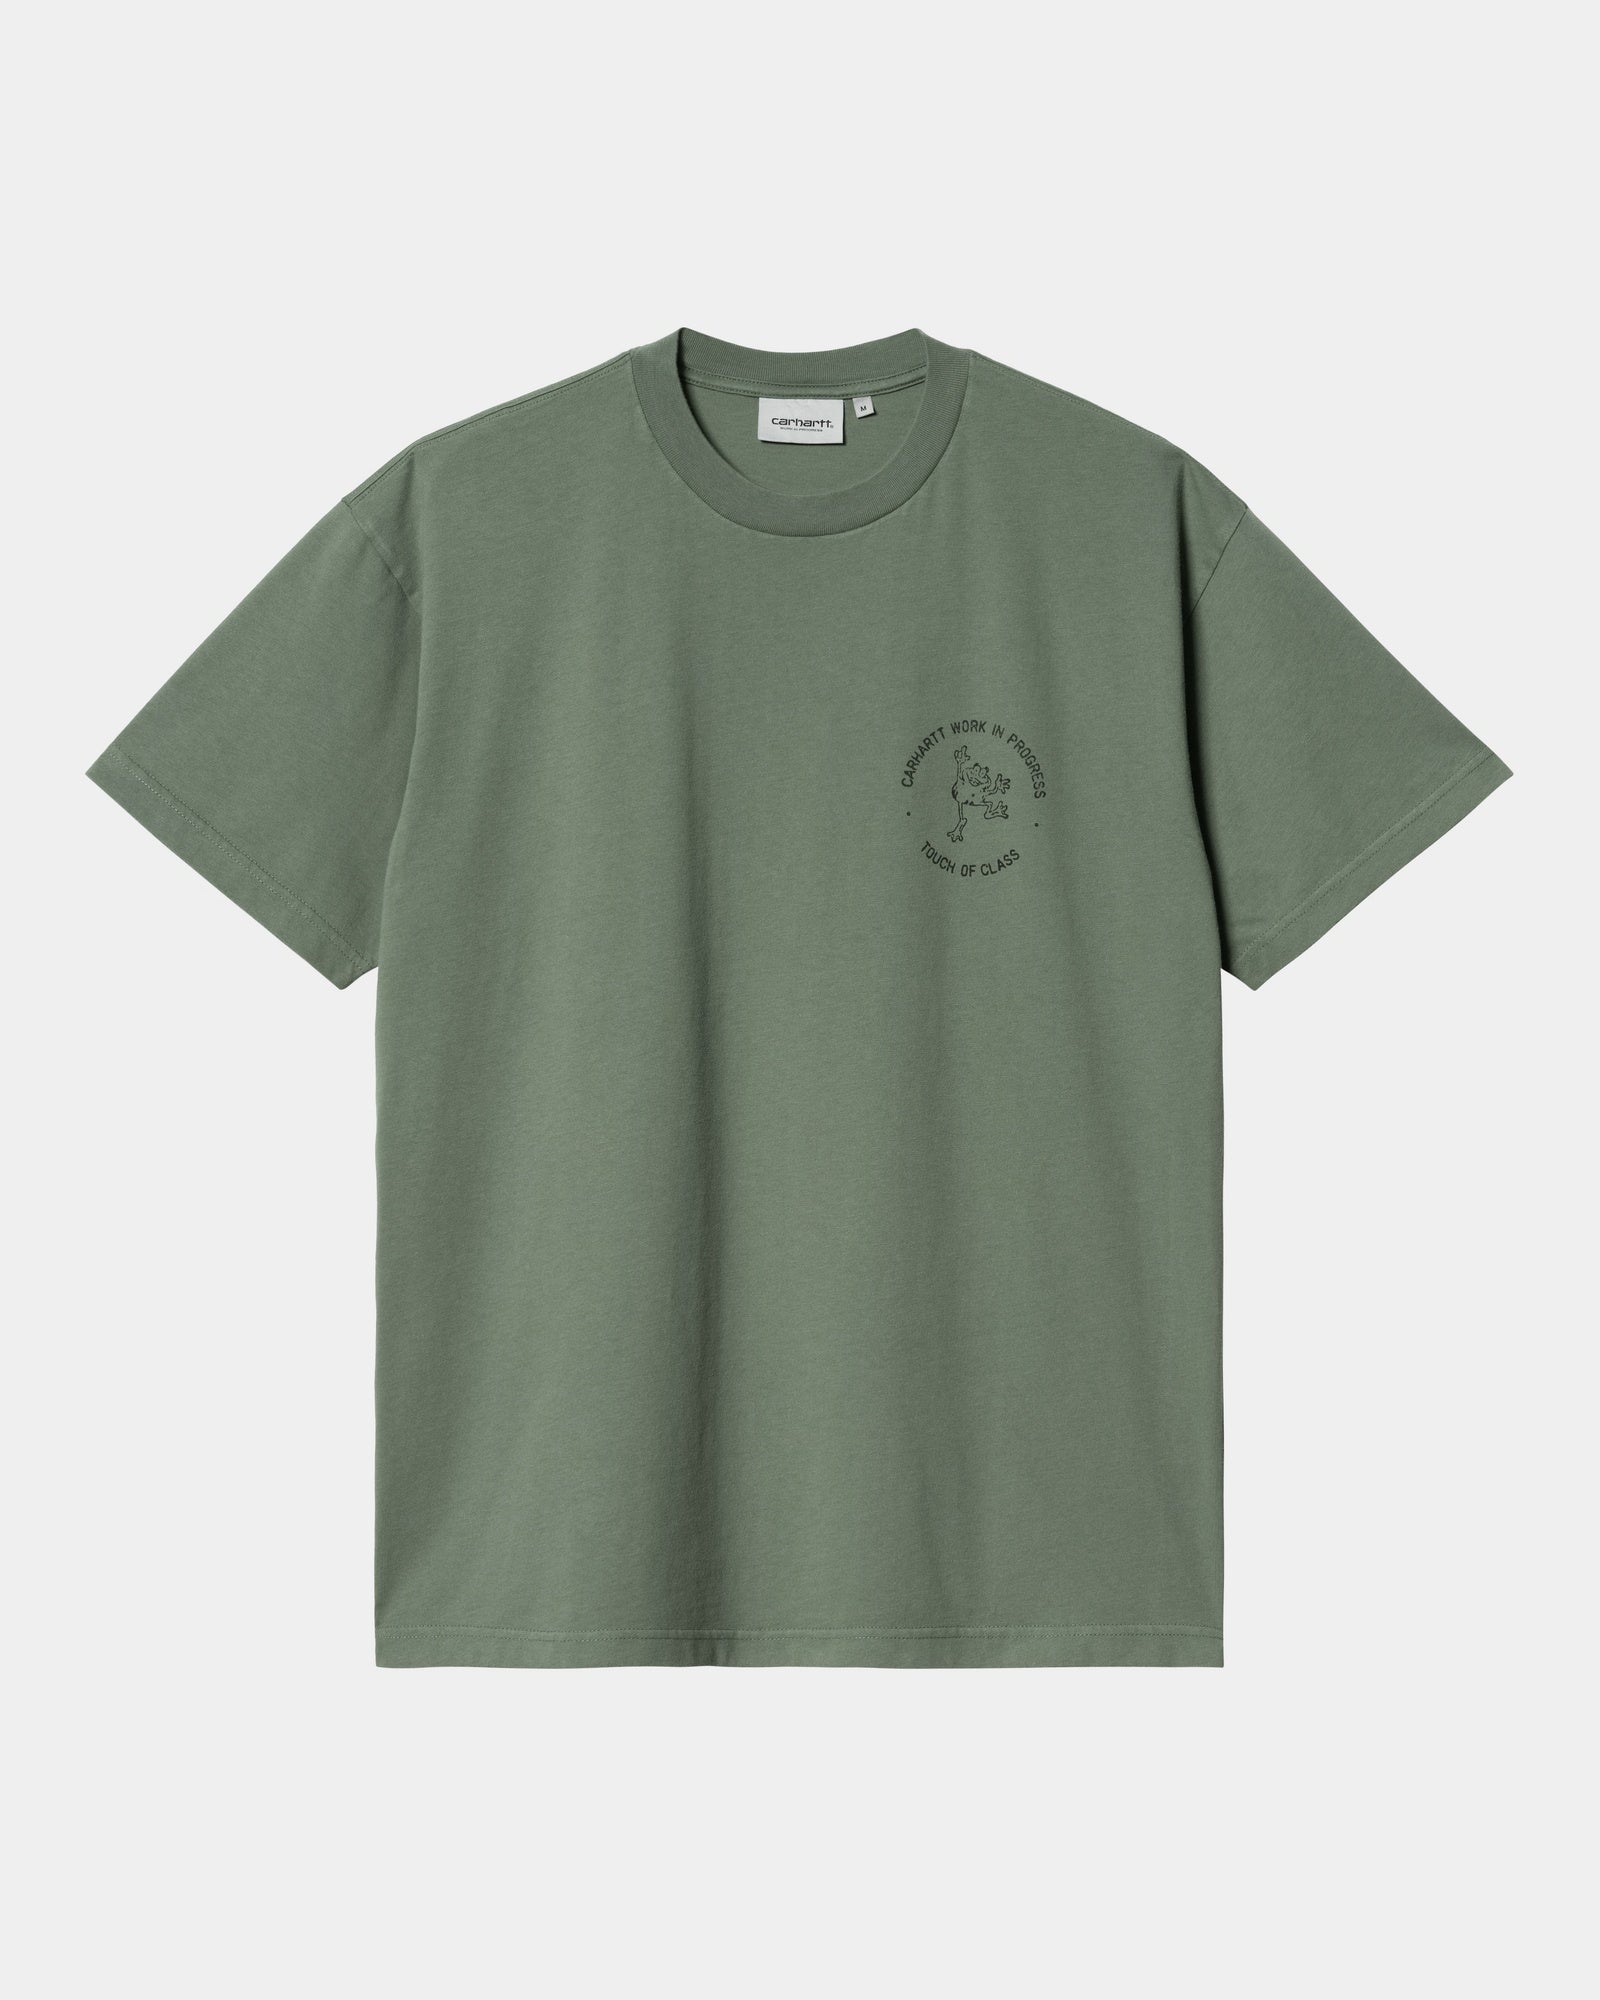 칼하트WIP Carhartt Stamp T-Shirt,Duck Green / Black stone washed